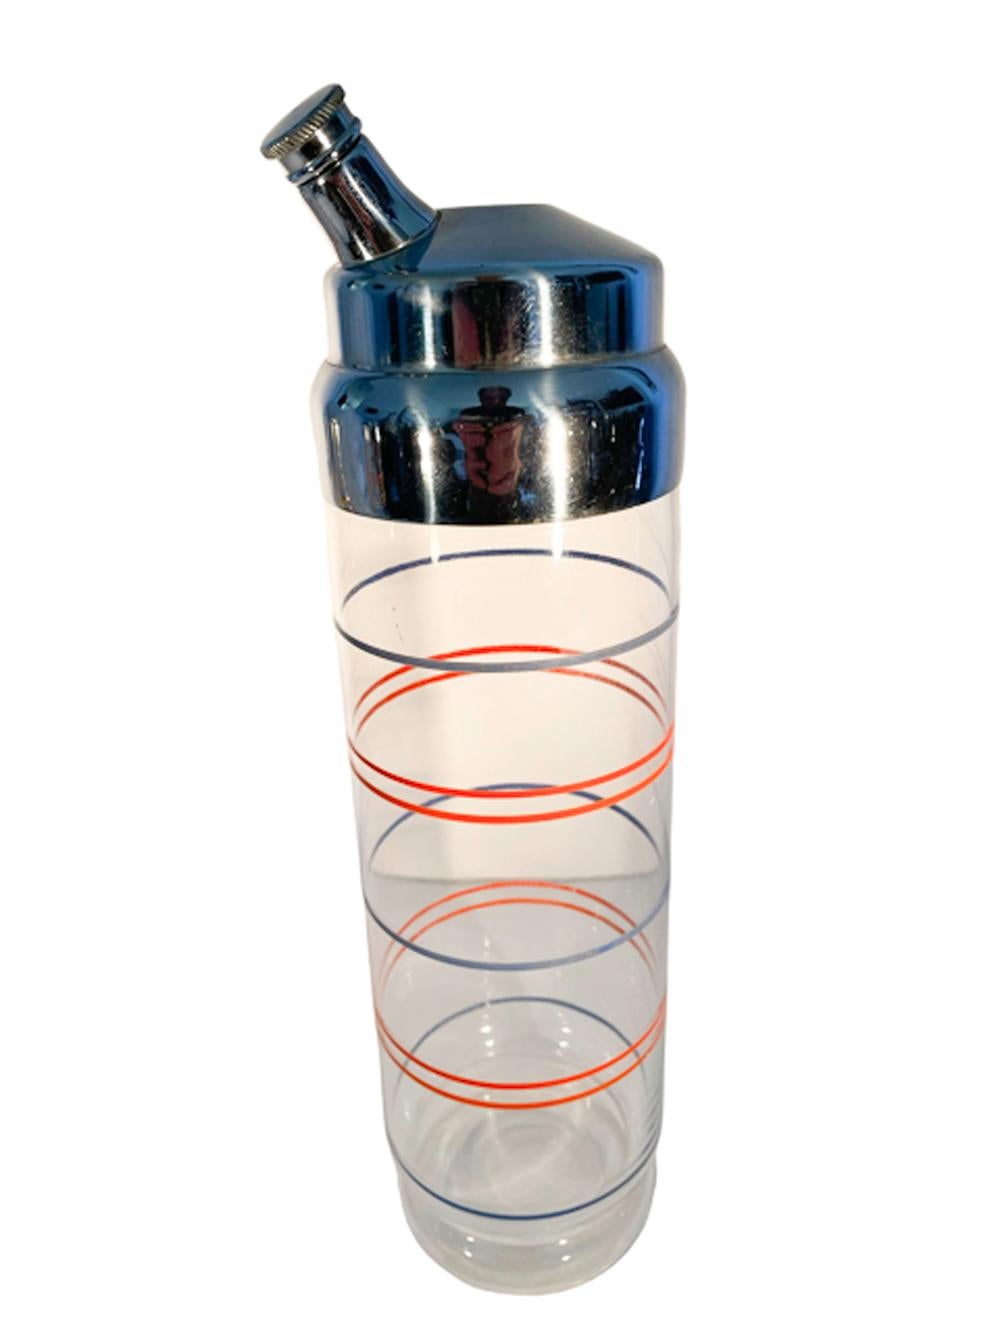 Grand shaker cylindrique Art Déco avec un pied à gradins décoré d'une alternance d'anneaux simples bleus et doubles orange et surmonté d'un haut dôme chromé avec un bec verseur allongé décentré, ainsi que six verres à cocktail assortis.